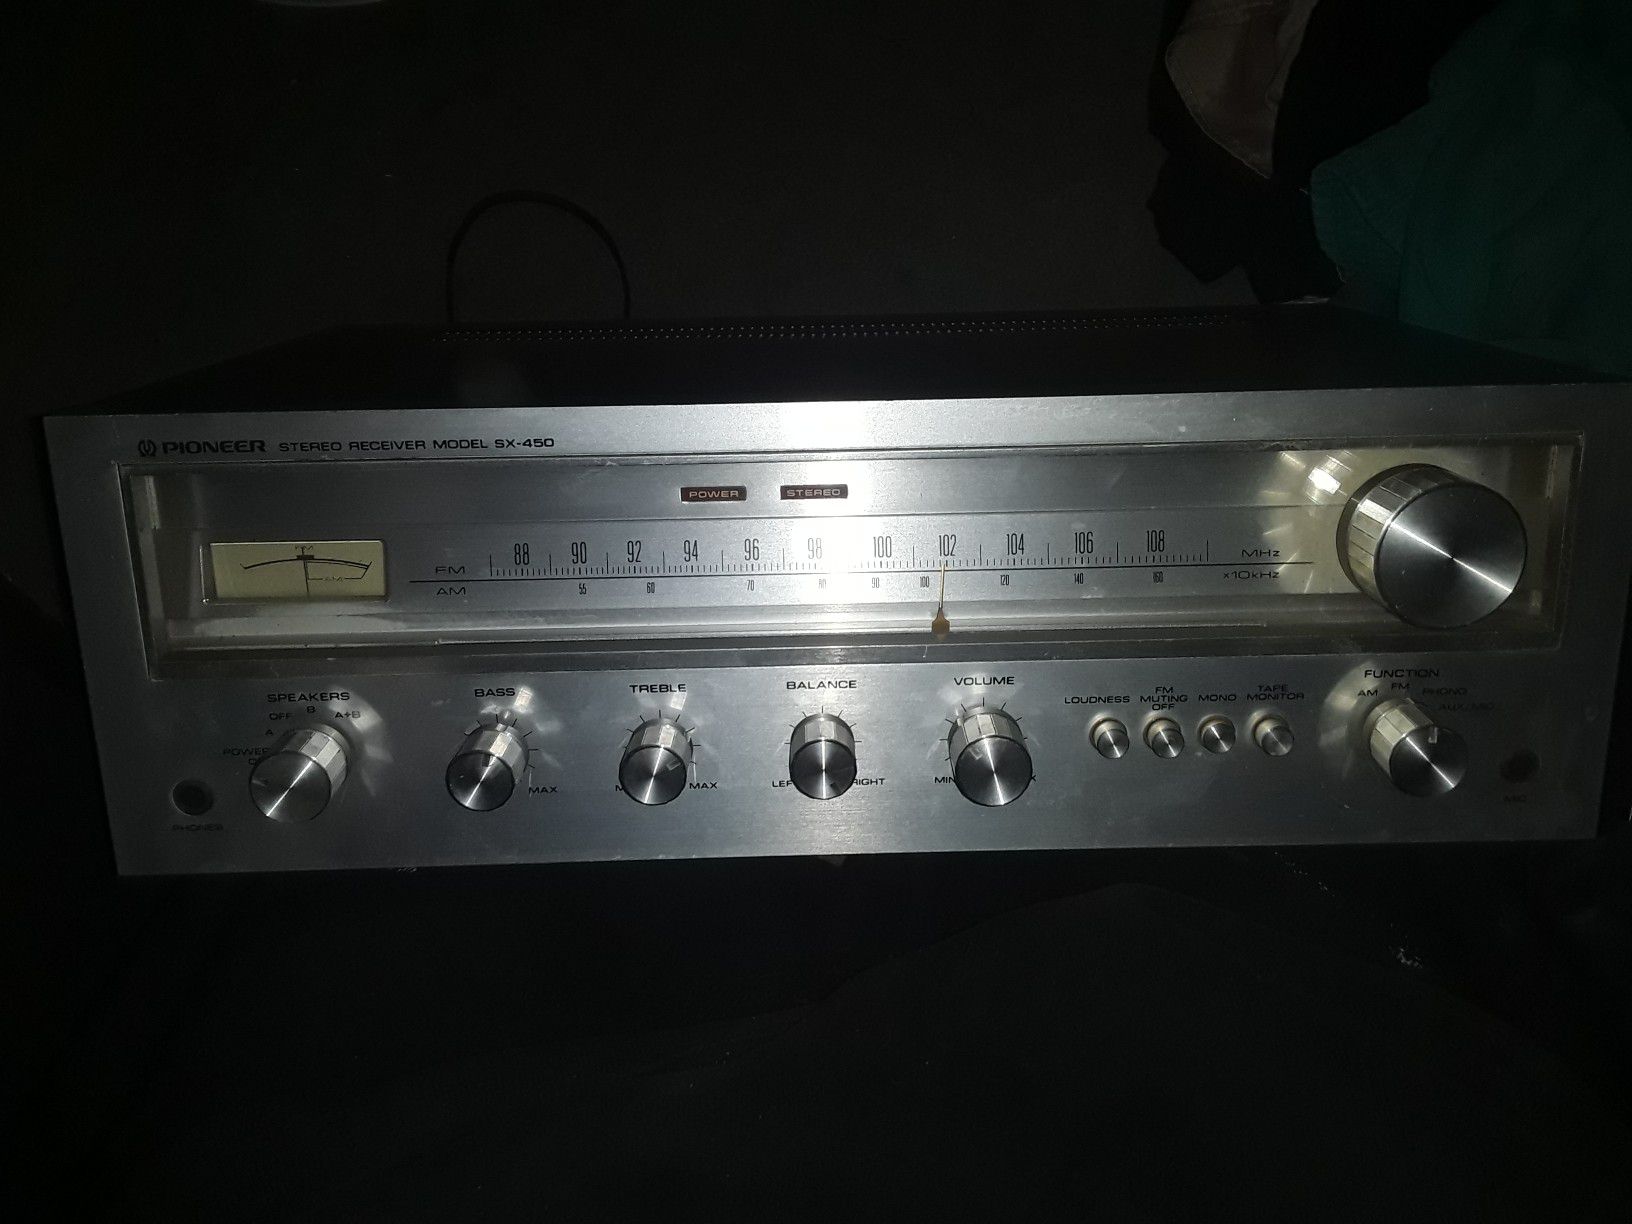 Vintage pioneer receiver